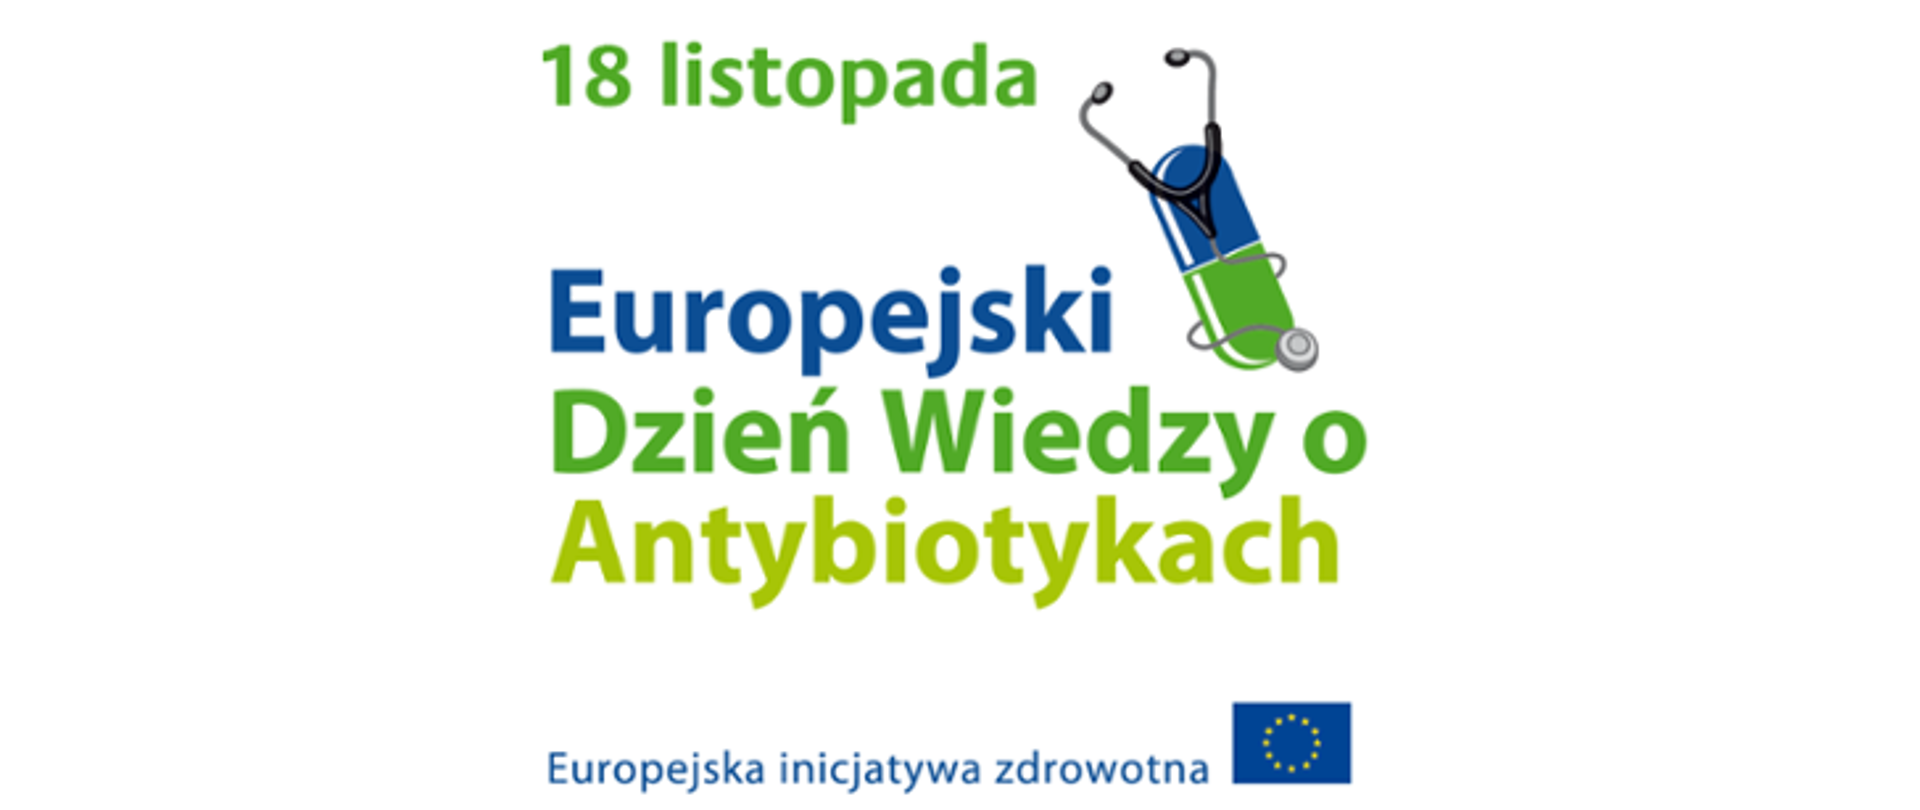 Zdjęcie przedstawia napis 18 listopada Europejski Dzień Wiedzy o Antybiotykach